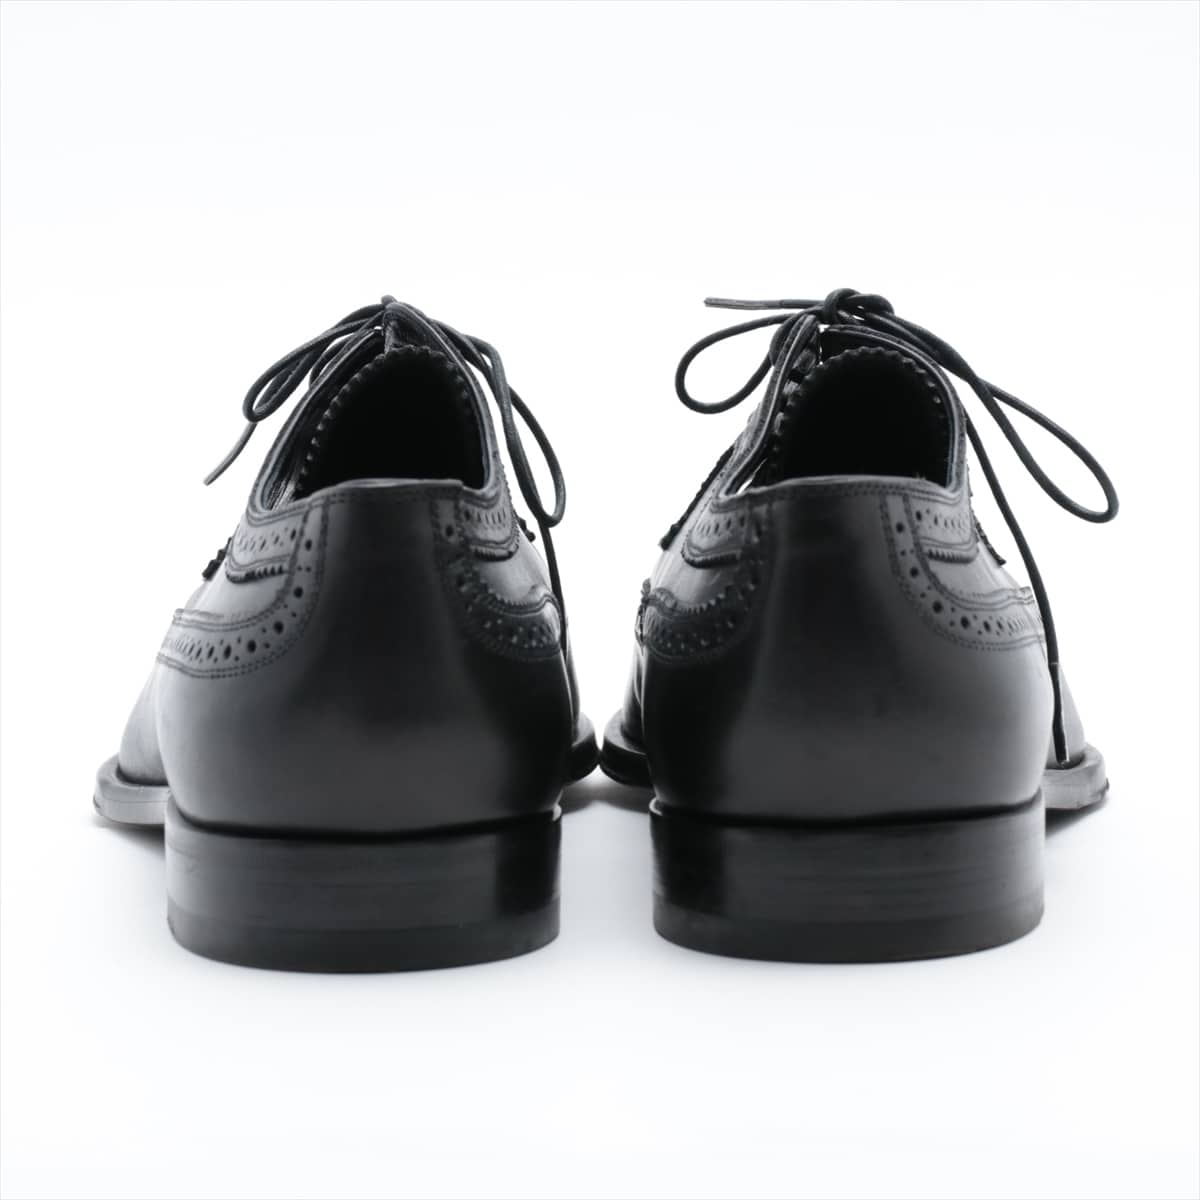 Louis Vuitton Leather Dress shoes 6 1/2 Men's Black ST0143